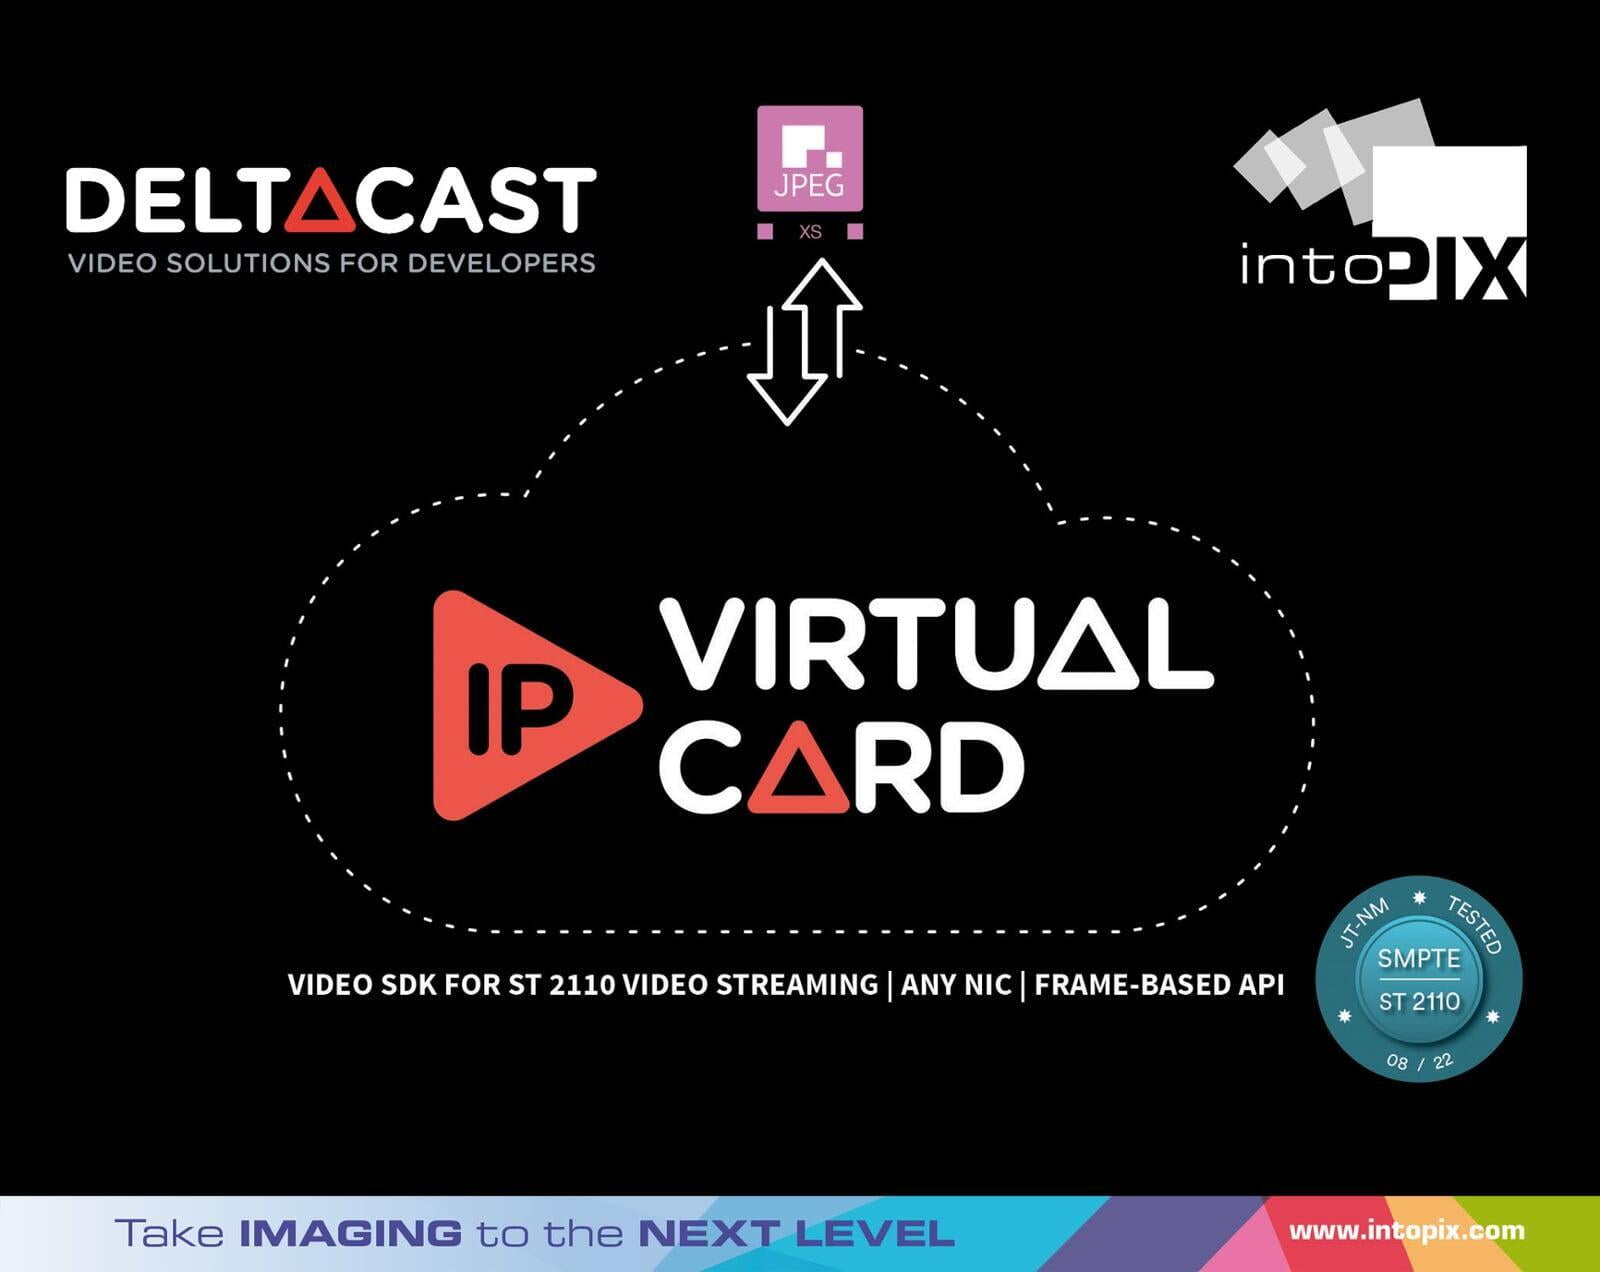 DELTACAST社が、intoPIXのJPEG XS softwareで低ビットレートSMPTE 2110-22 ビデオストリーミングのサポートをするIP Virtual Cardを発表。